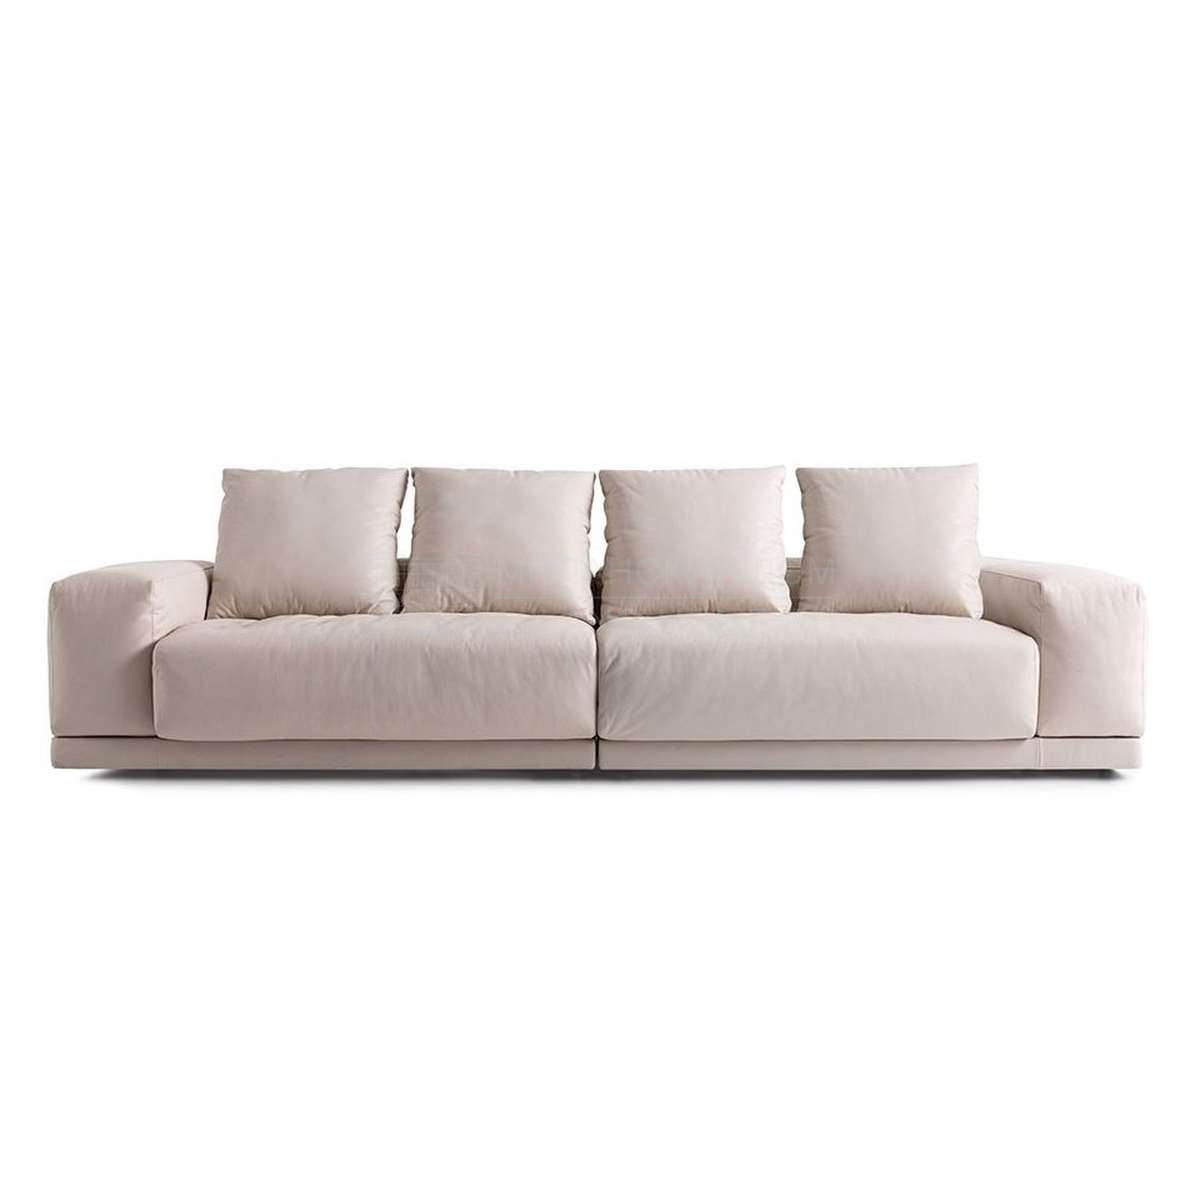 Модульный диван Cabo pure sofa modular из Италии фабрики FENDI Casa